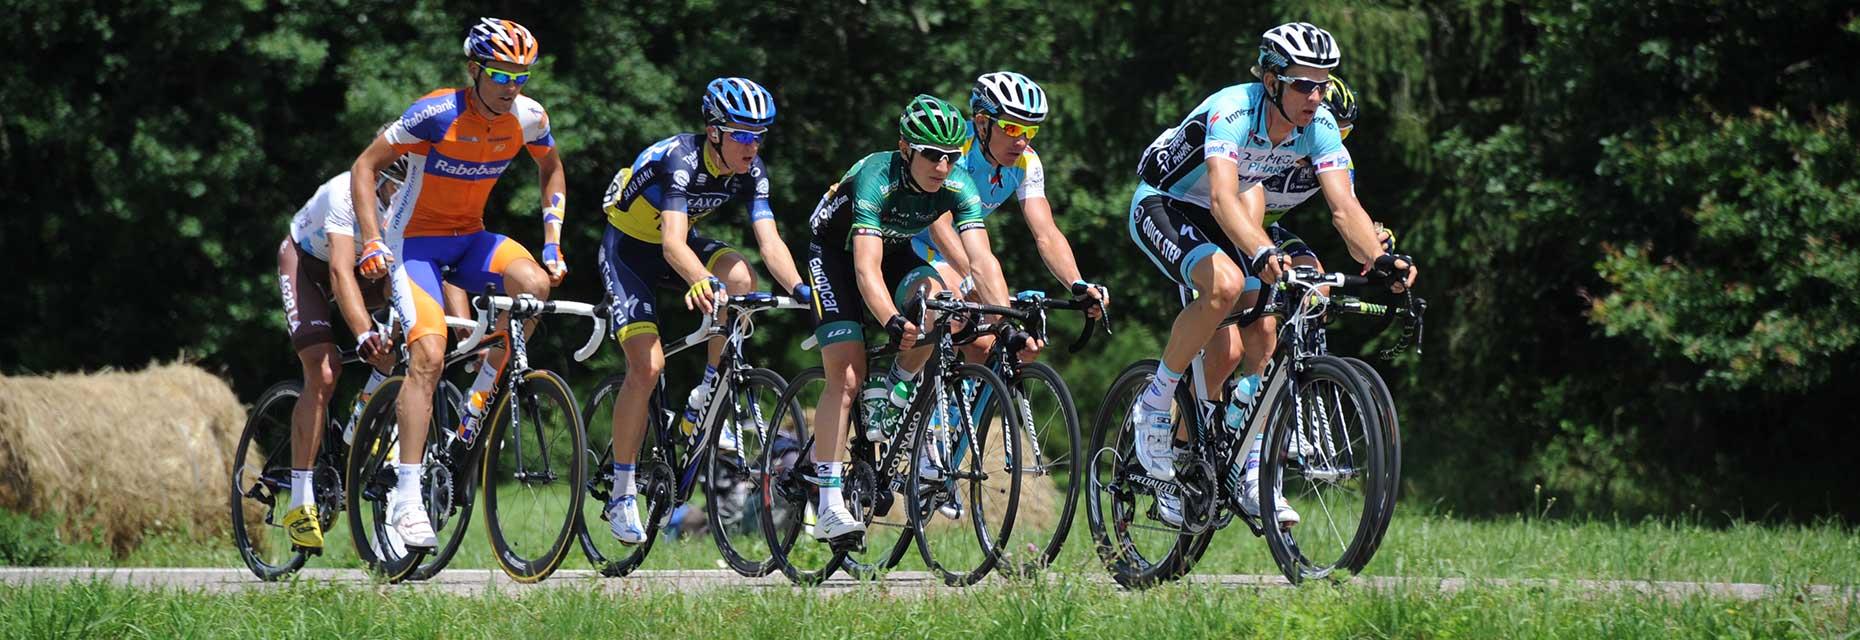 Tour de France cycliste en Haute-Saône